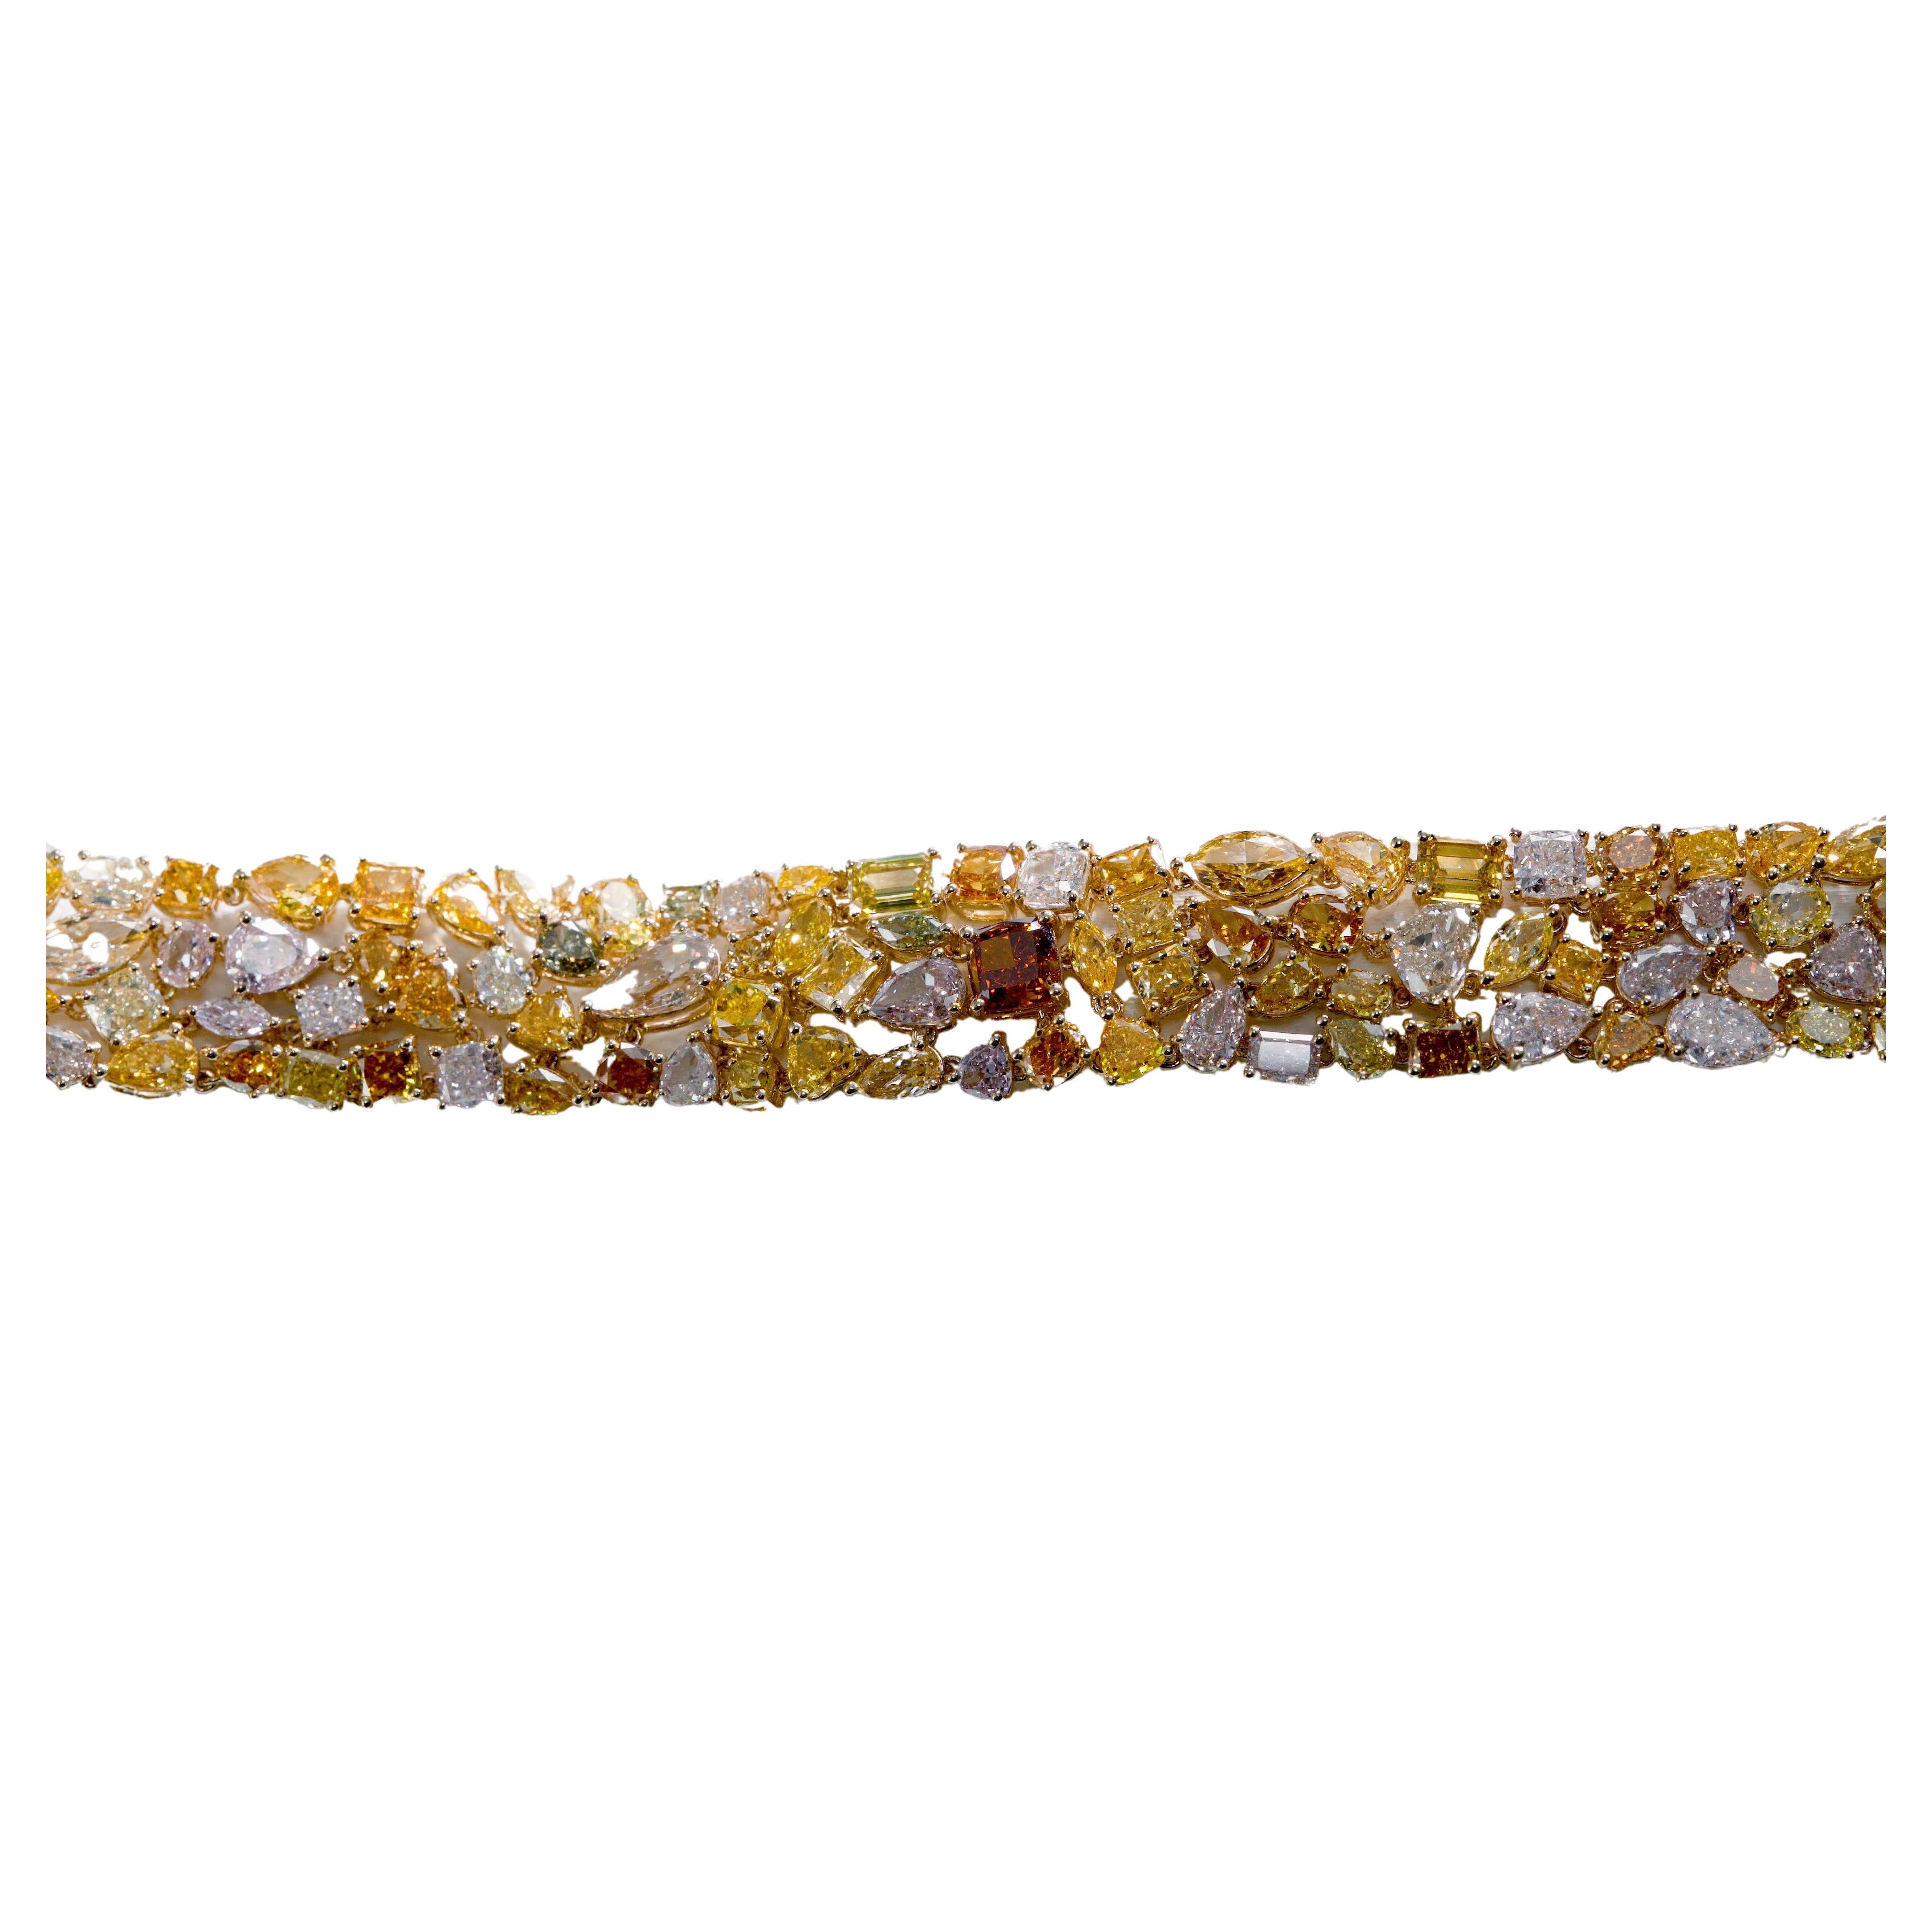 Natürliches Gliederarmband aus 18KT Gold mit Diamanten in mehreren Fancy-Farben und verschiedenen Formen